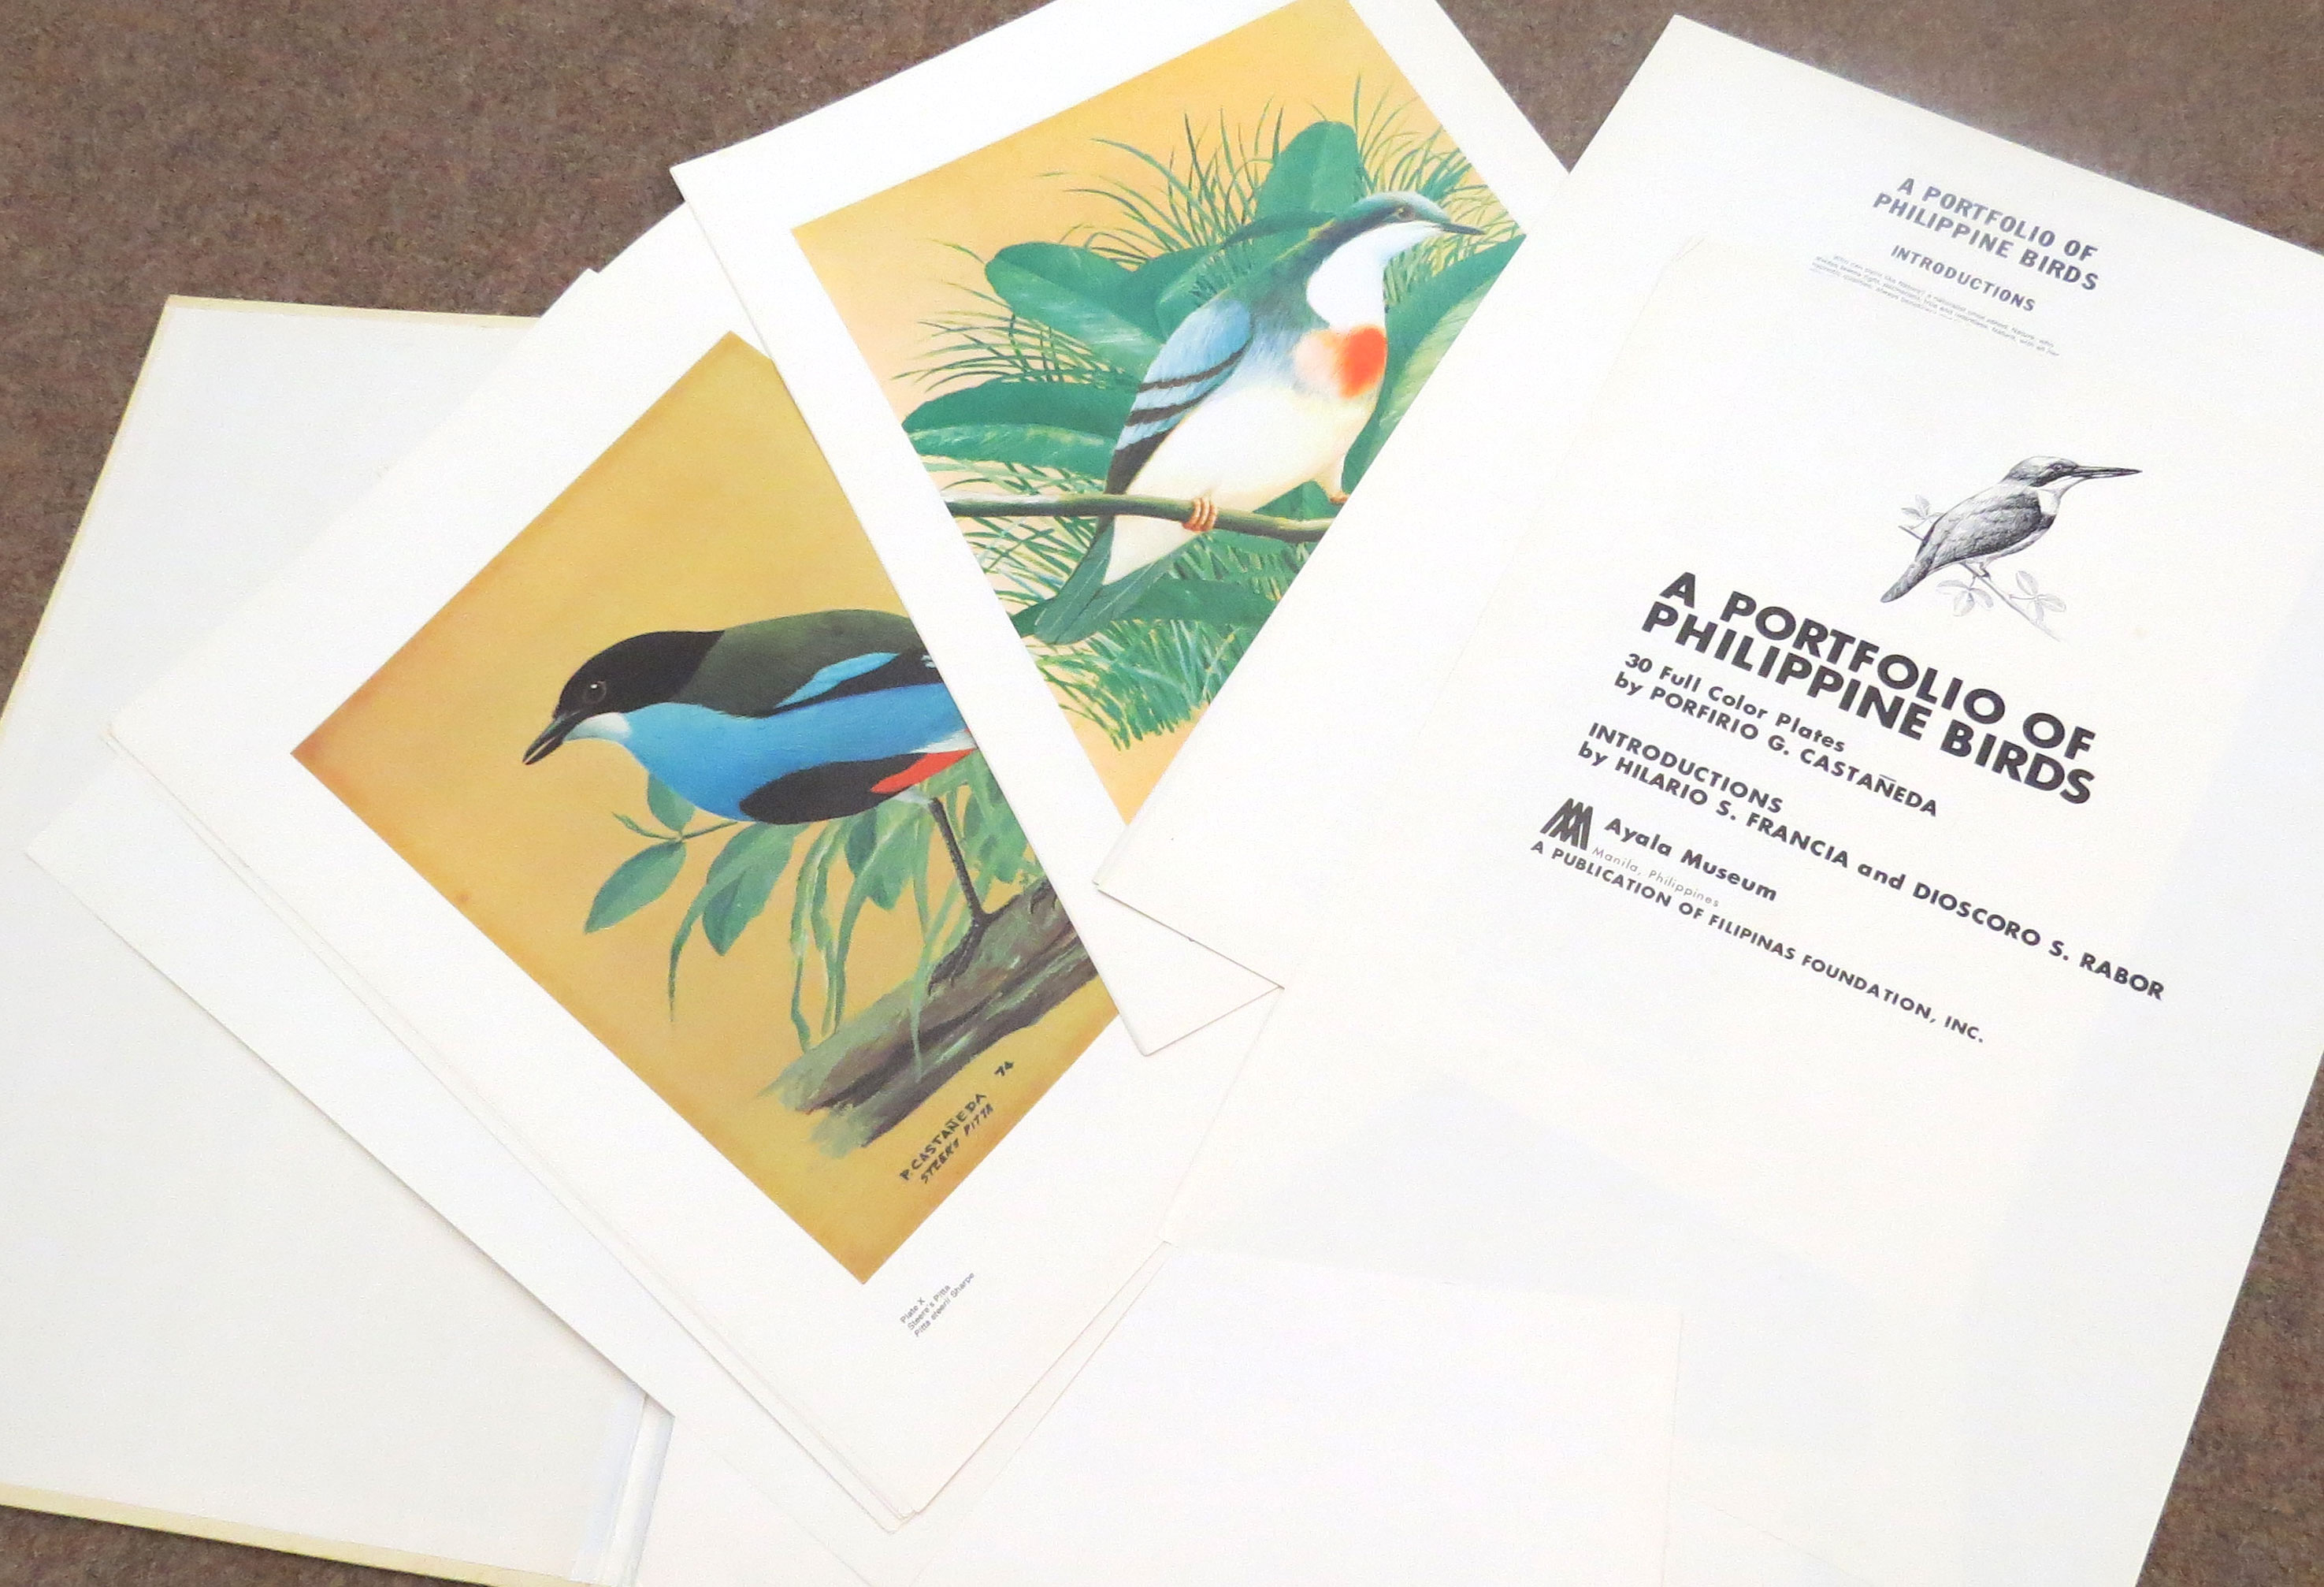 Porfirio Castaneda (20th century), - a portfolio of Phillippine birds, a publication of Filipinas